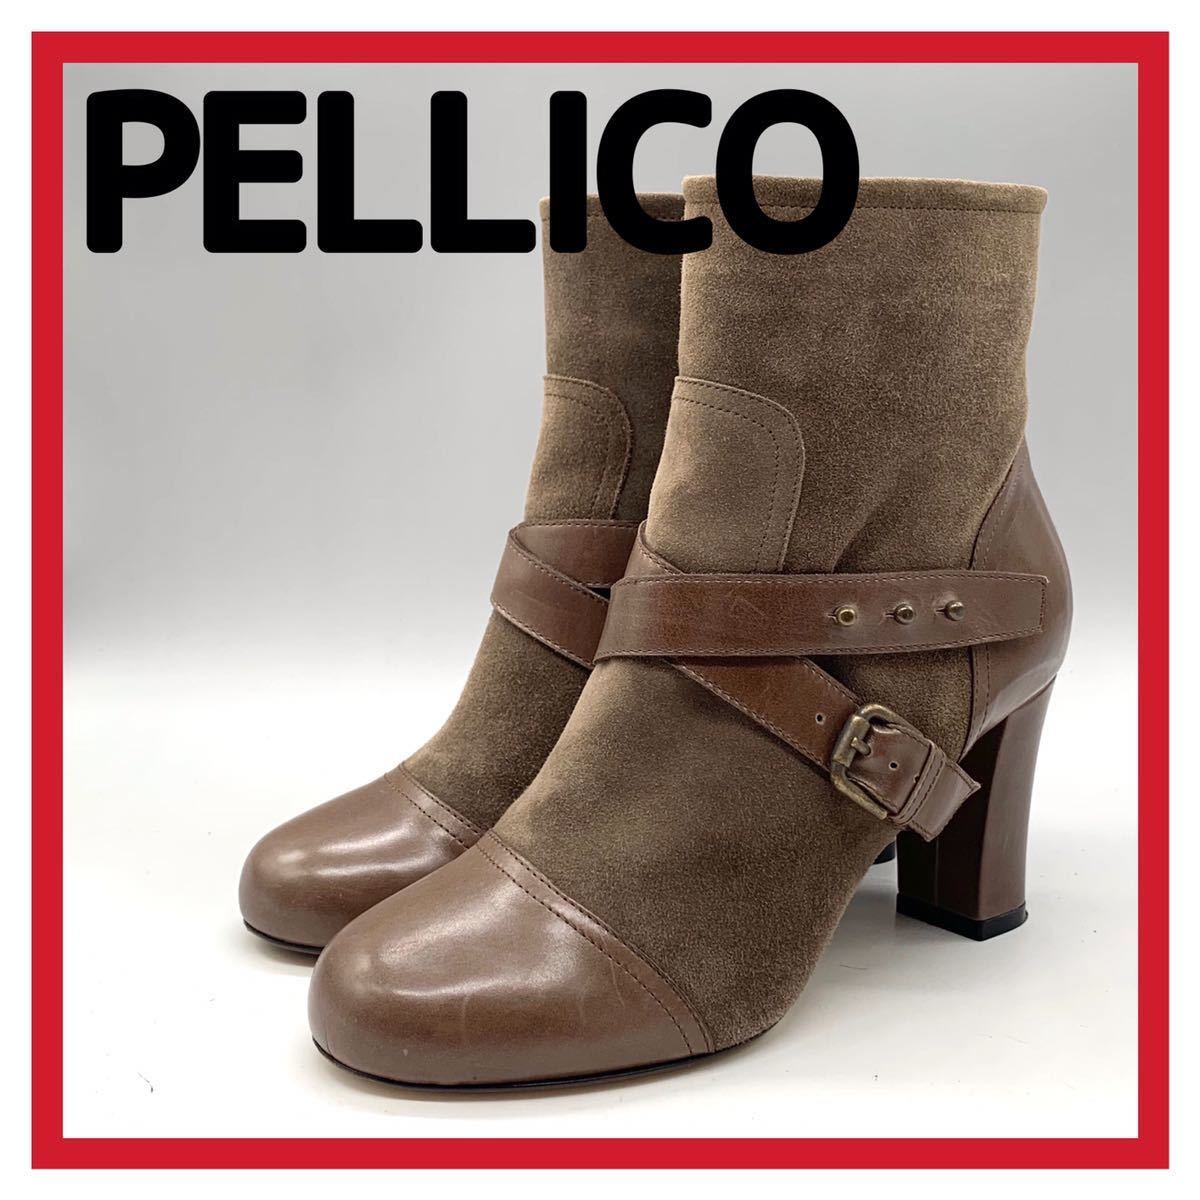 レディース PELLICO (ペリーコ) ブーツ ショートブーツ サイドジップ 太ヒール スエード レザー ブラウン 36 23cm シューズ イタリア製